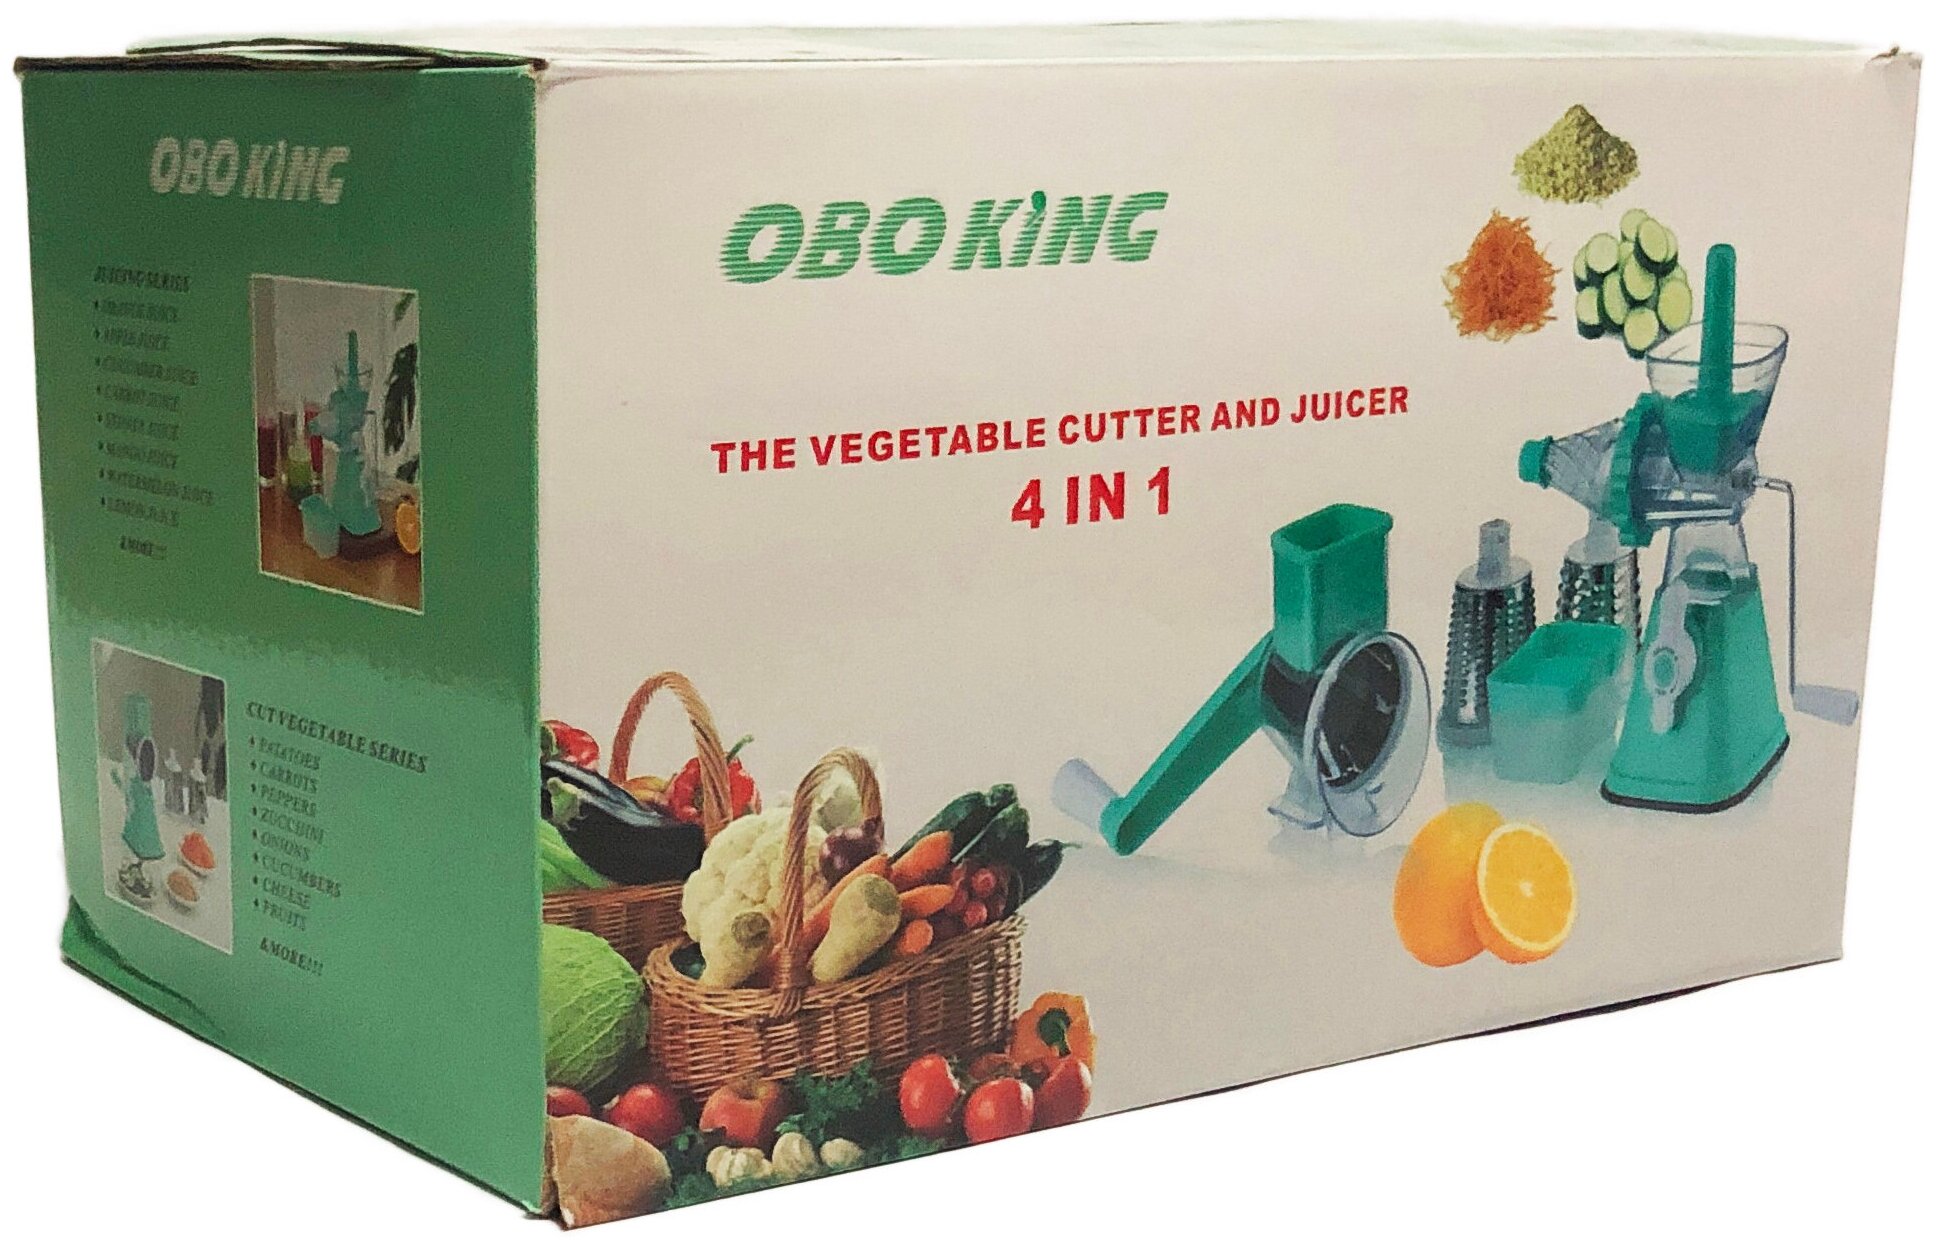 Измельчитель для овощей и фруктов 4в1 OboKing The Vegetable Cutter and Juicer 4in1 оптом